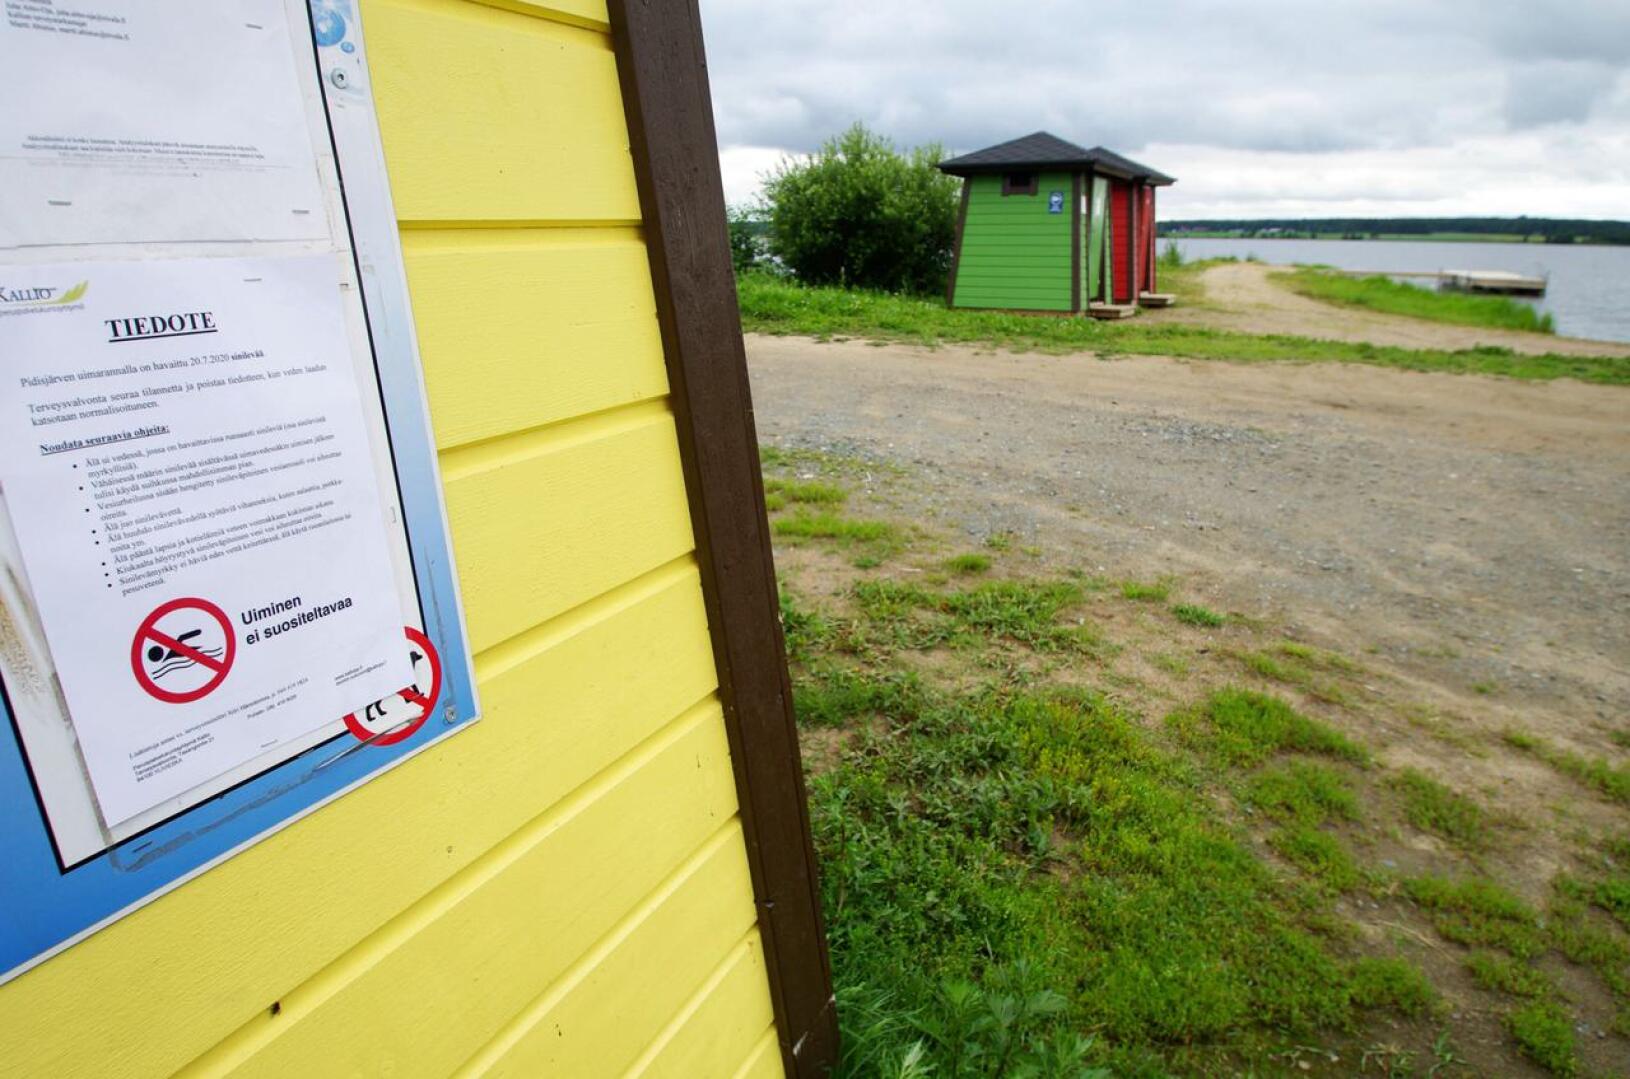 Pidisjärven rantaan Kyläojan uimarannalle tuotiin aiemmin heinäkuussa tiedote sinilevähavainnoista, mutta enää ne eivät uimarantaa kiusaa.